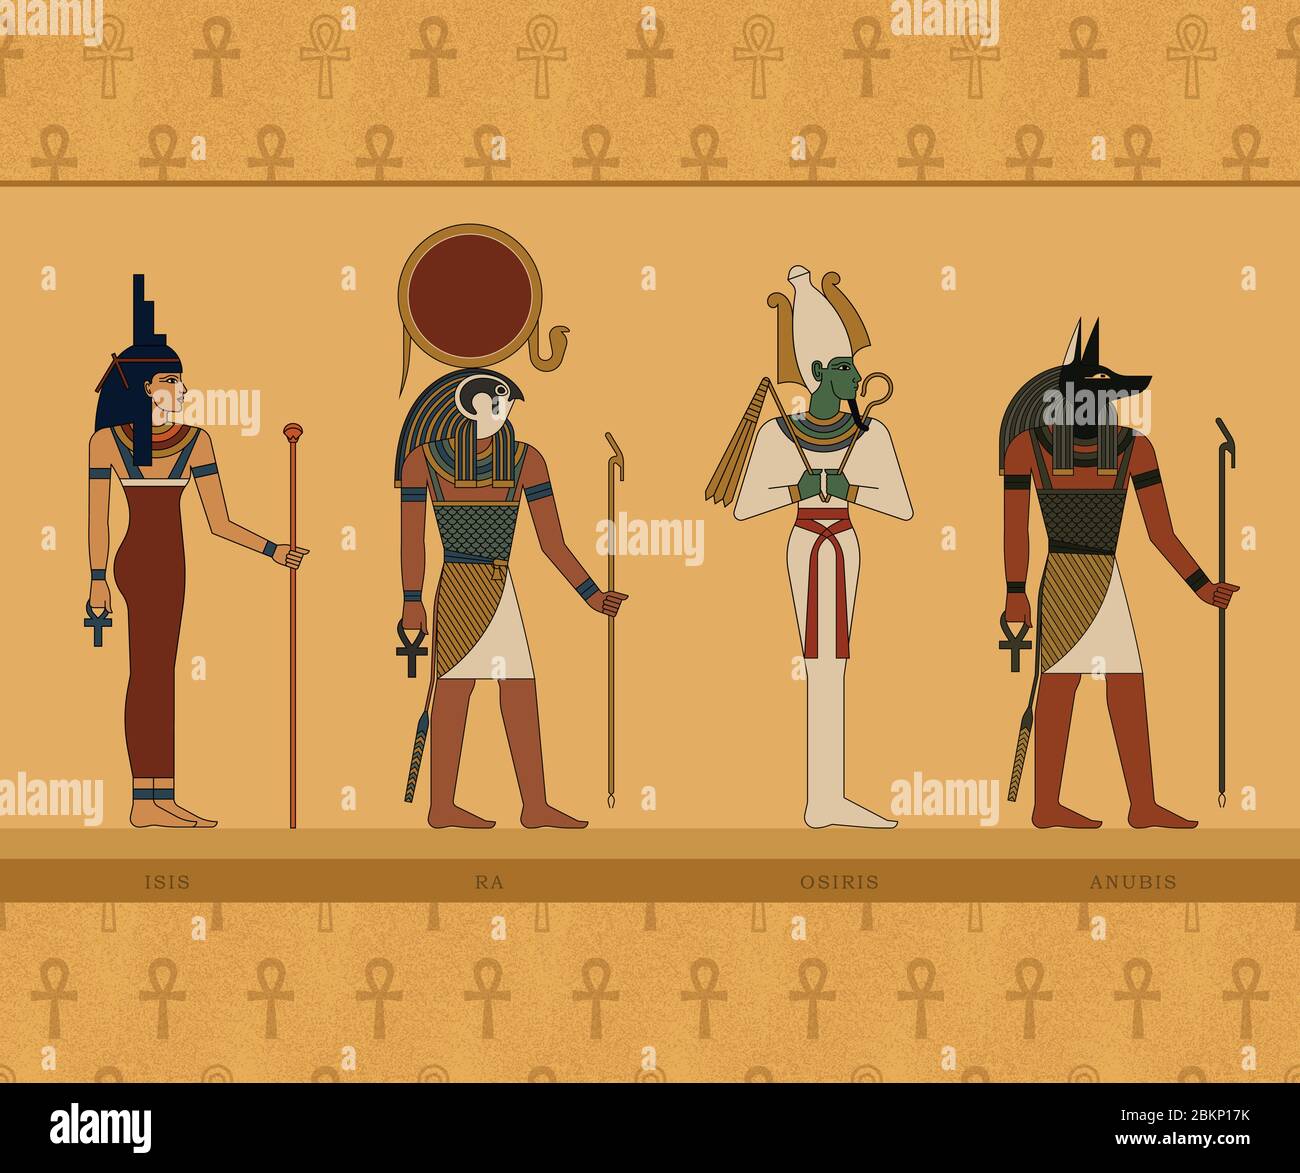 Illustrationen der Götter des alten Ägypten. ISIS, Ra, Osiris und Anubis. Stock Vektor